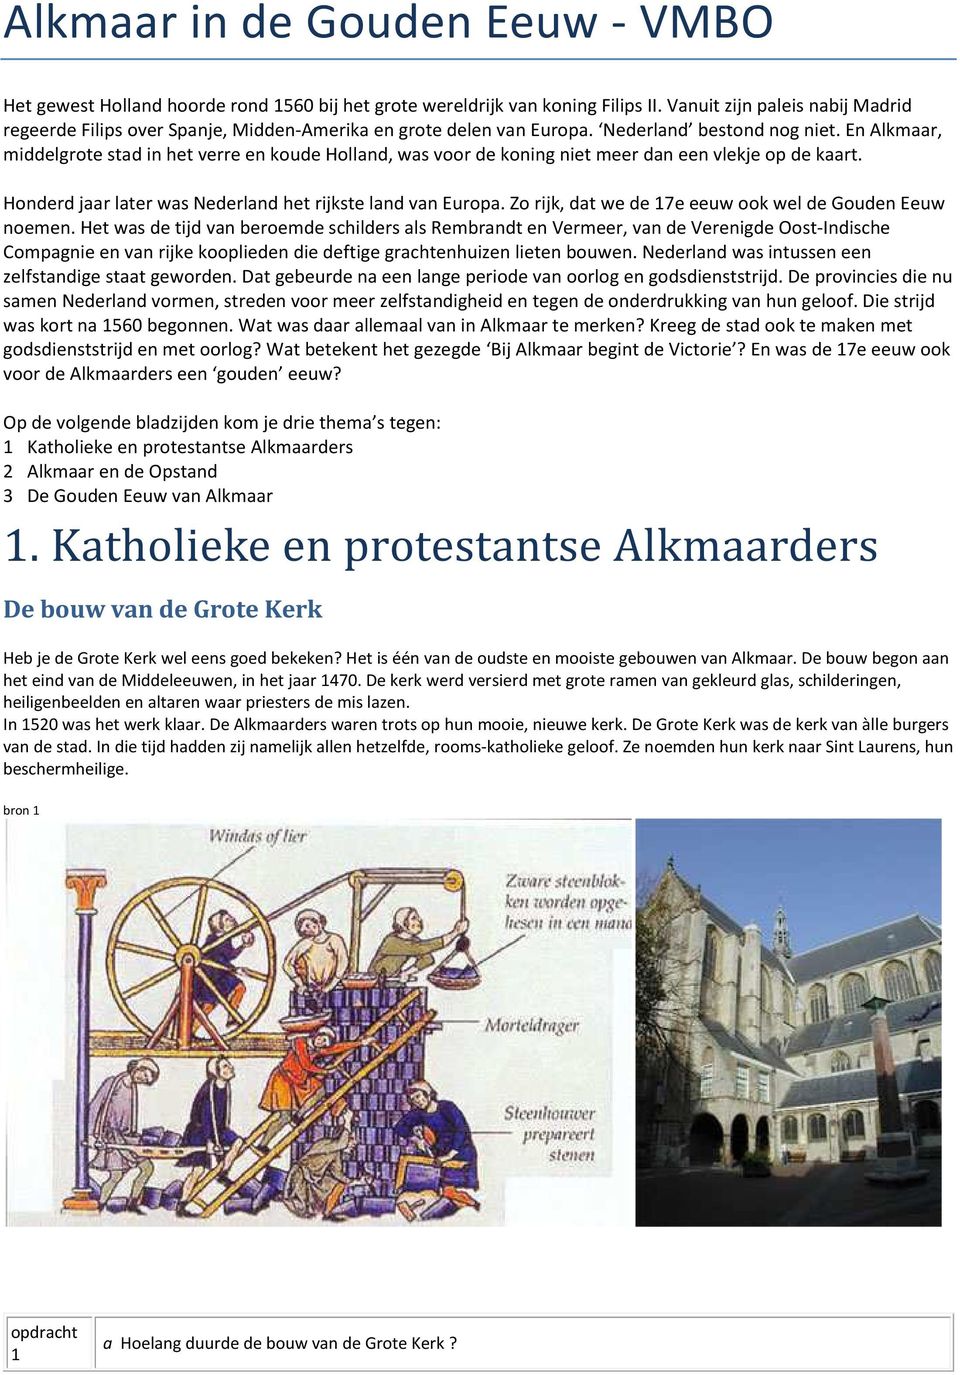 En Alkmaar, middelgrote stad in het verre en koude Holland, was voor de koning niet meer dan een vlekje op de kaart. Honderd jaar later was Nederland het rijkste land van Europa.